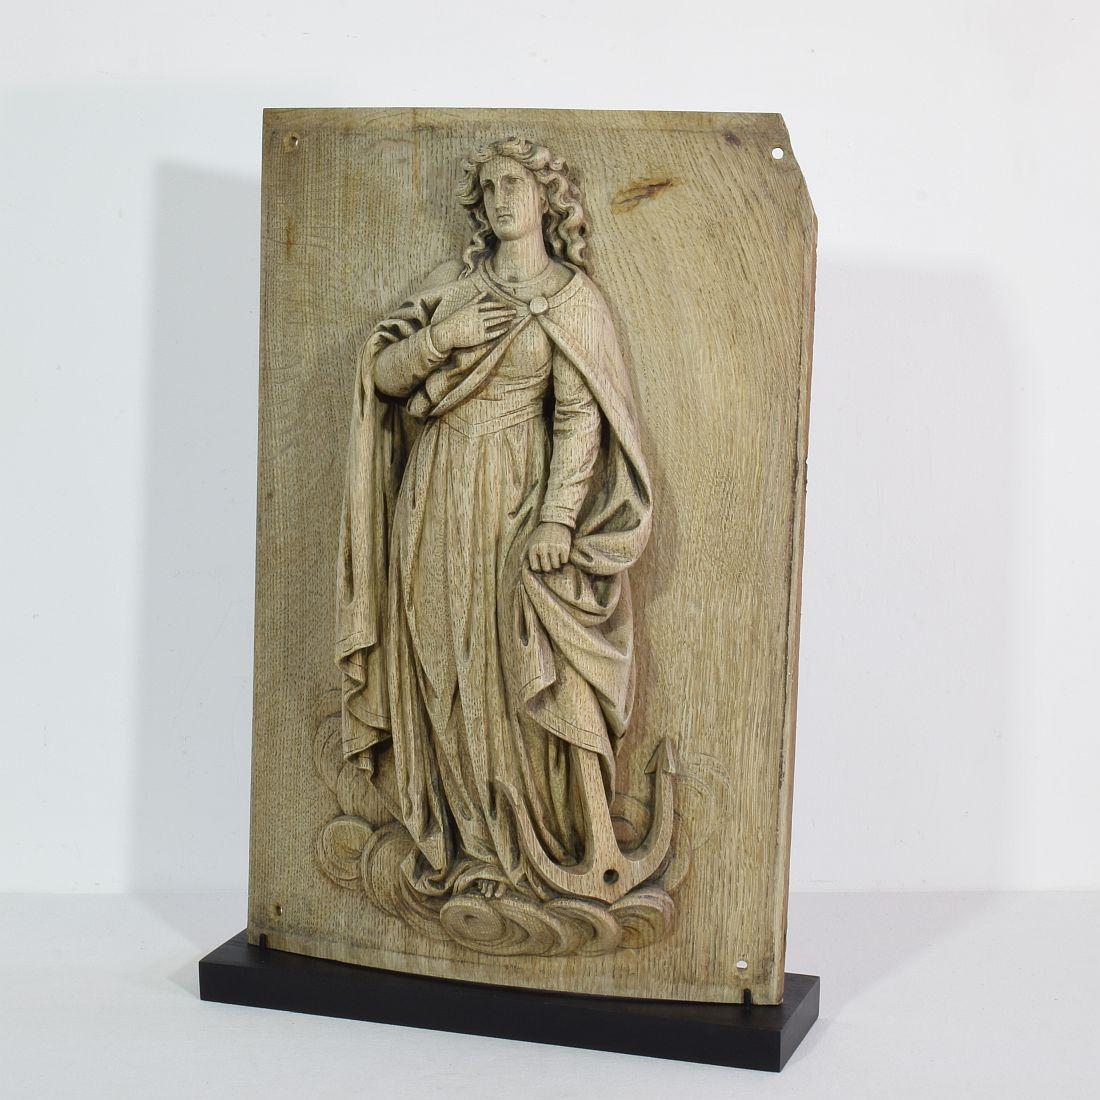 Magnifique panneau en chêne vieilli représentant Sainte Philomène.

Également connue sous le nom de Philomène de Rome, c'était une jeune vierge martyre dont les restes ont été découverts les 24 et 25 mai 1802 dans la catacombe de Priscilla. Trois